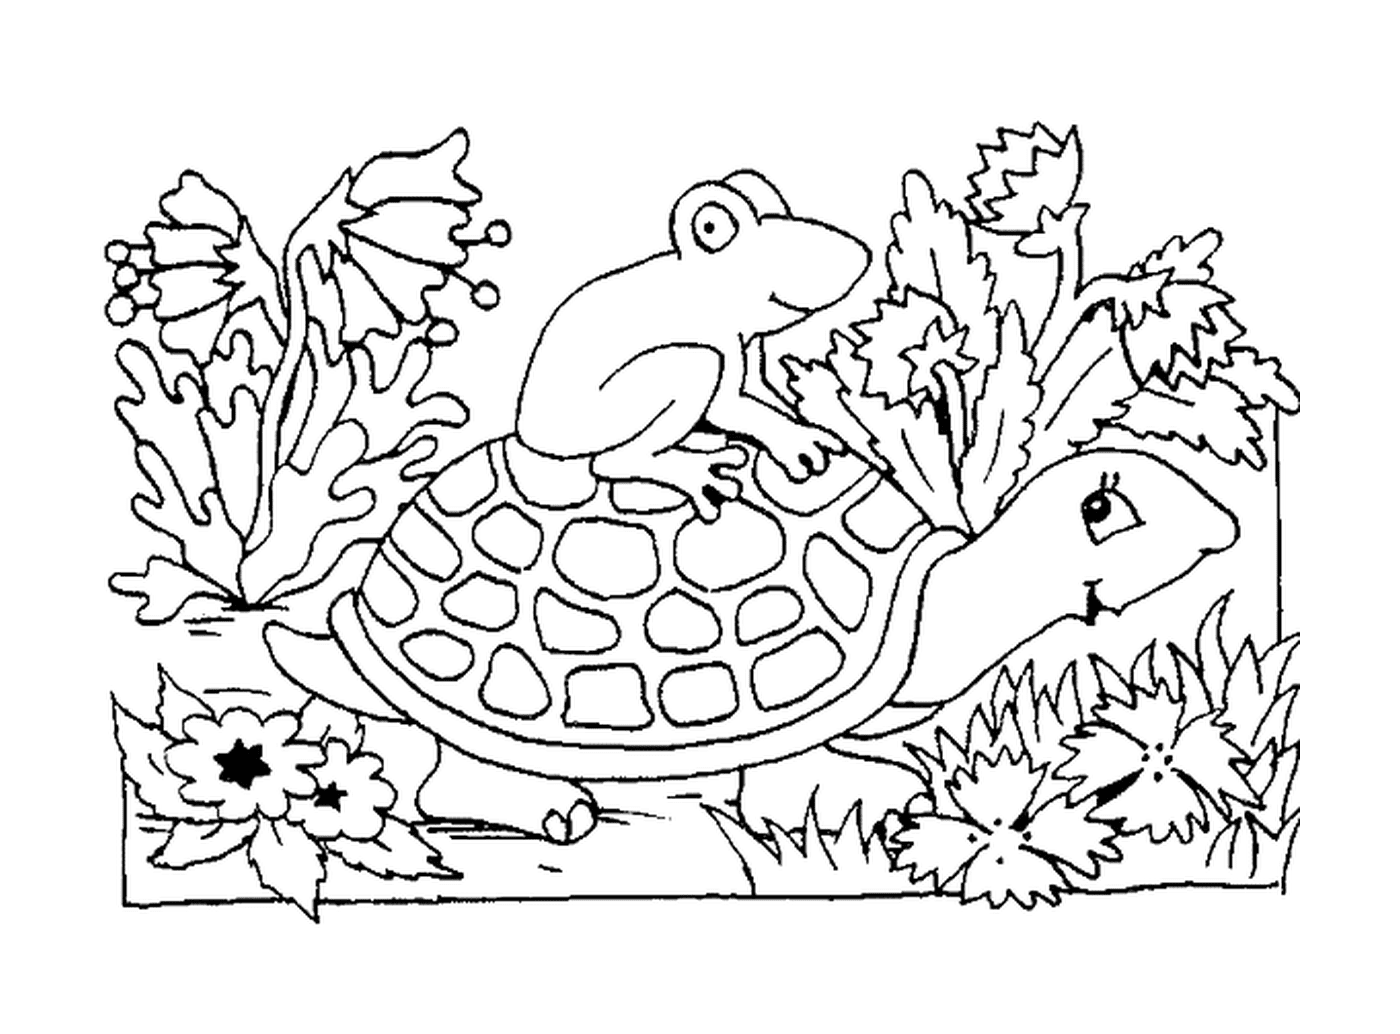   Grenouille sur la carapace de la tortue 